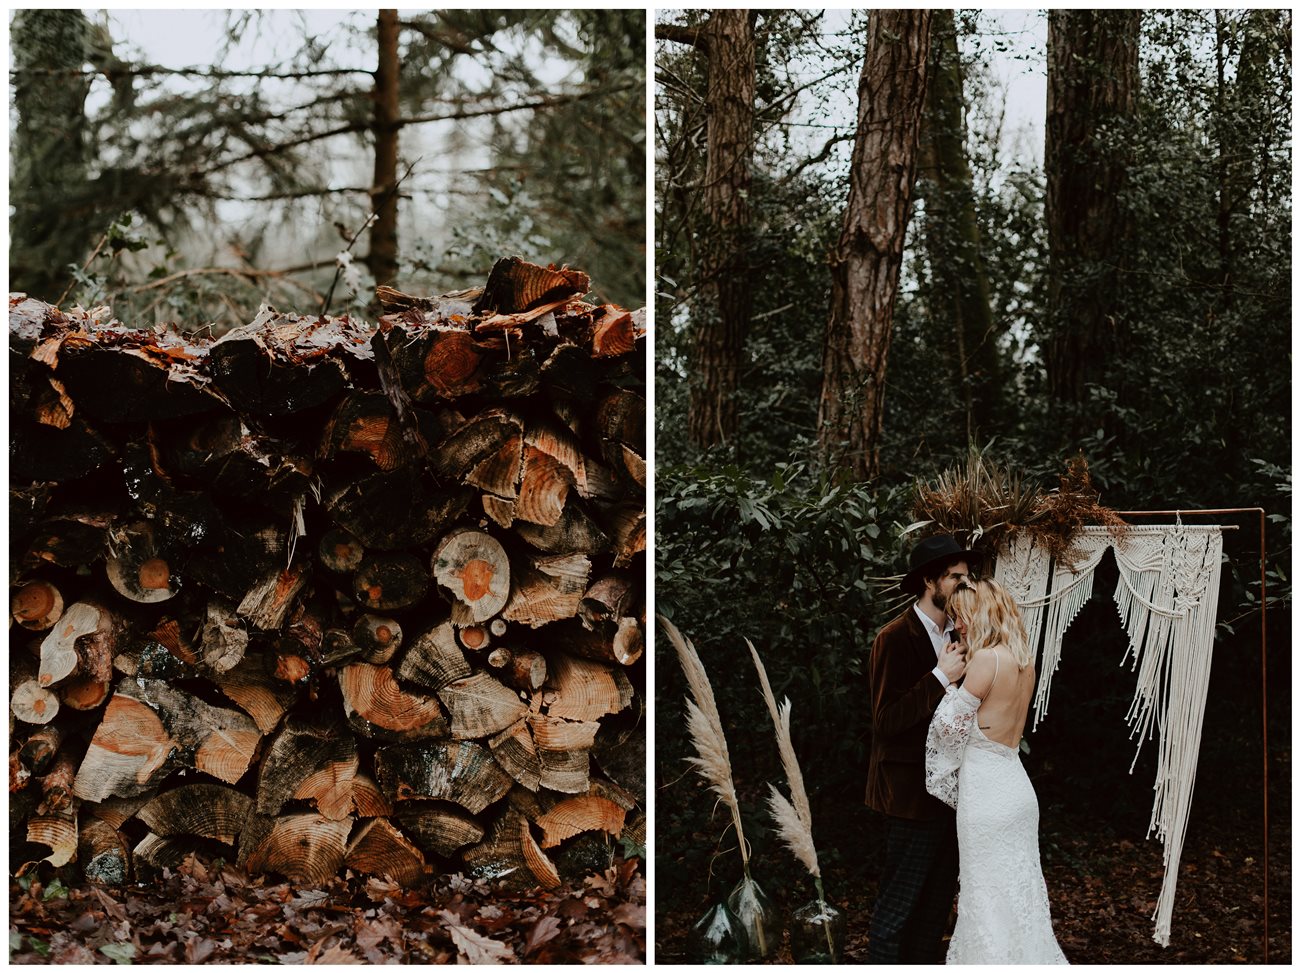 mariage bohème cérémonie laïque forêt détails troncs d'arbres